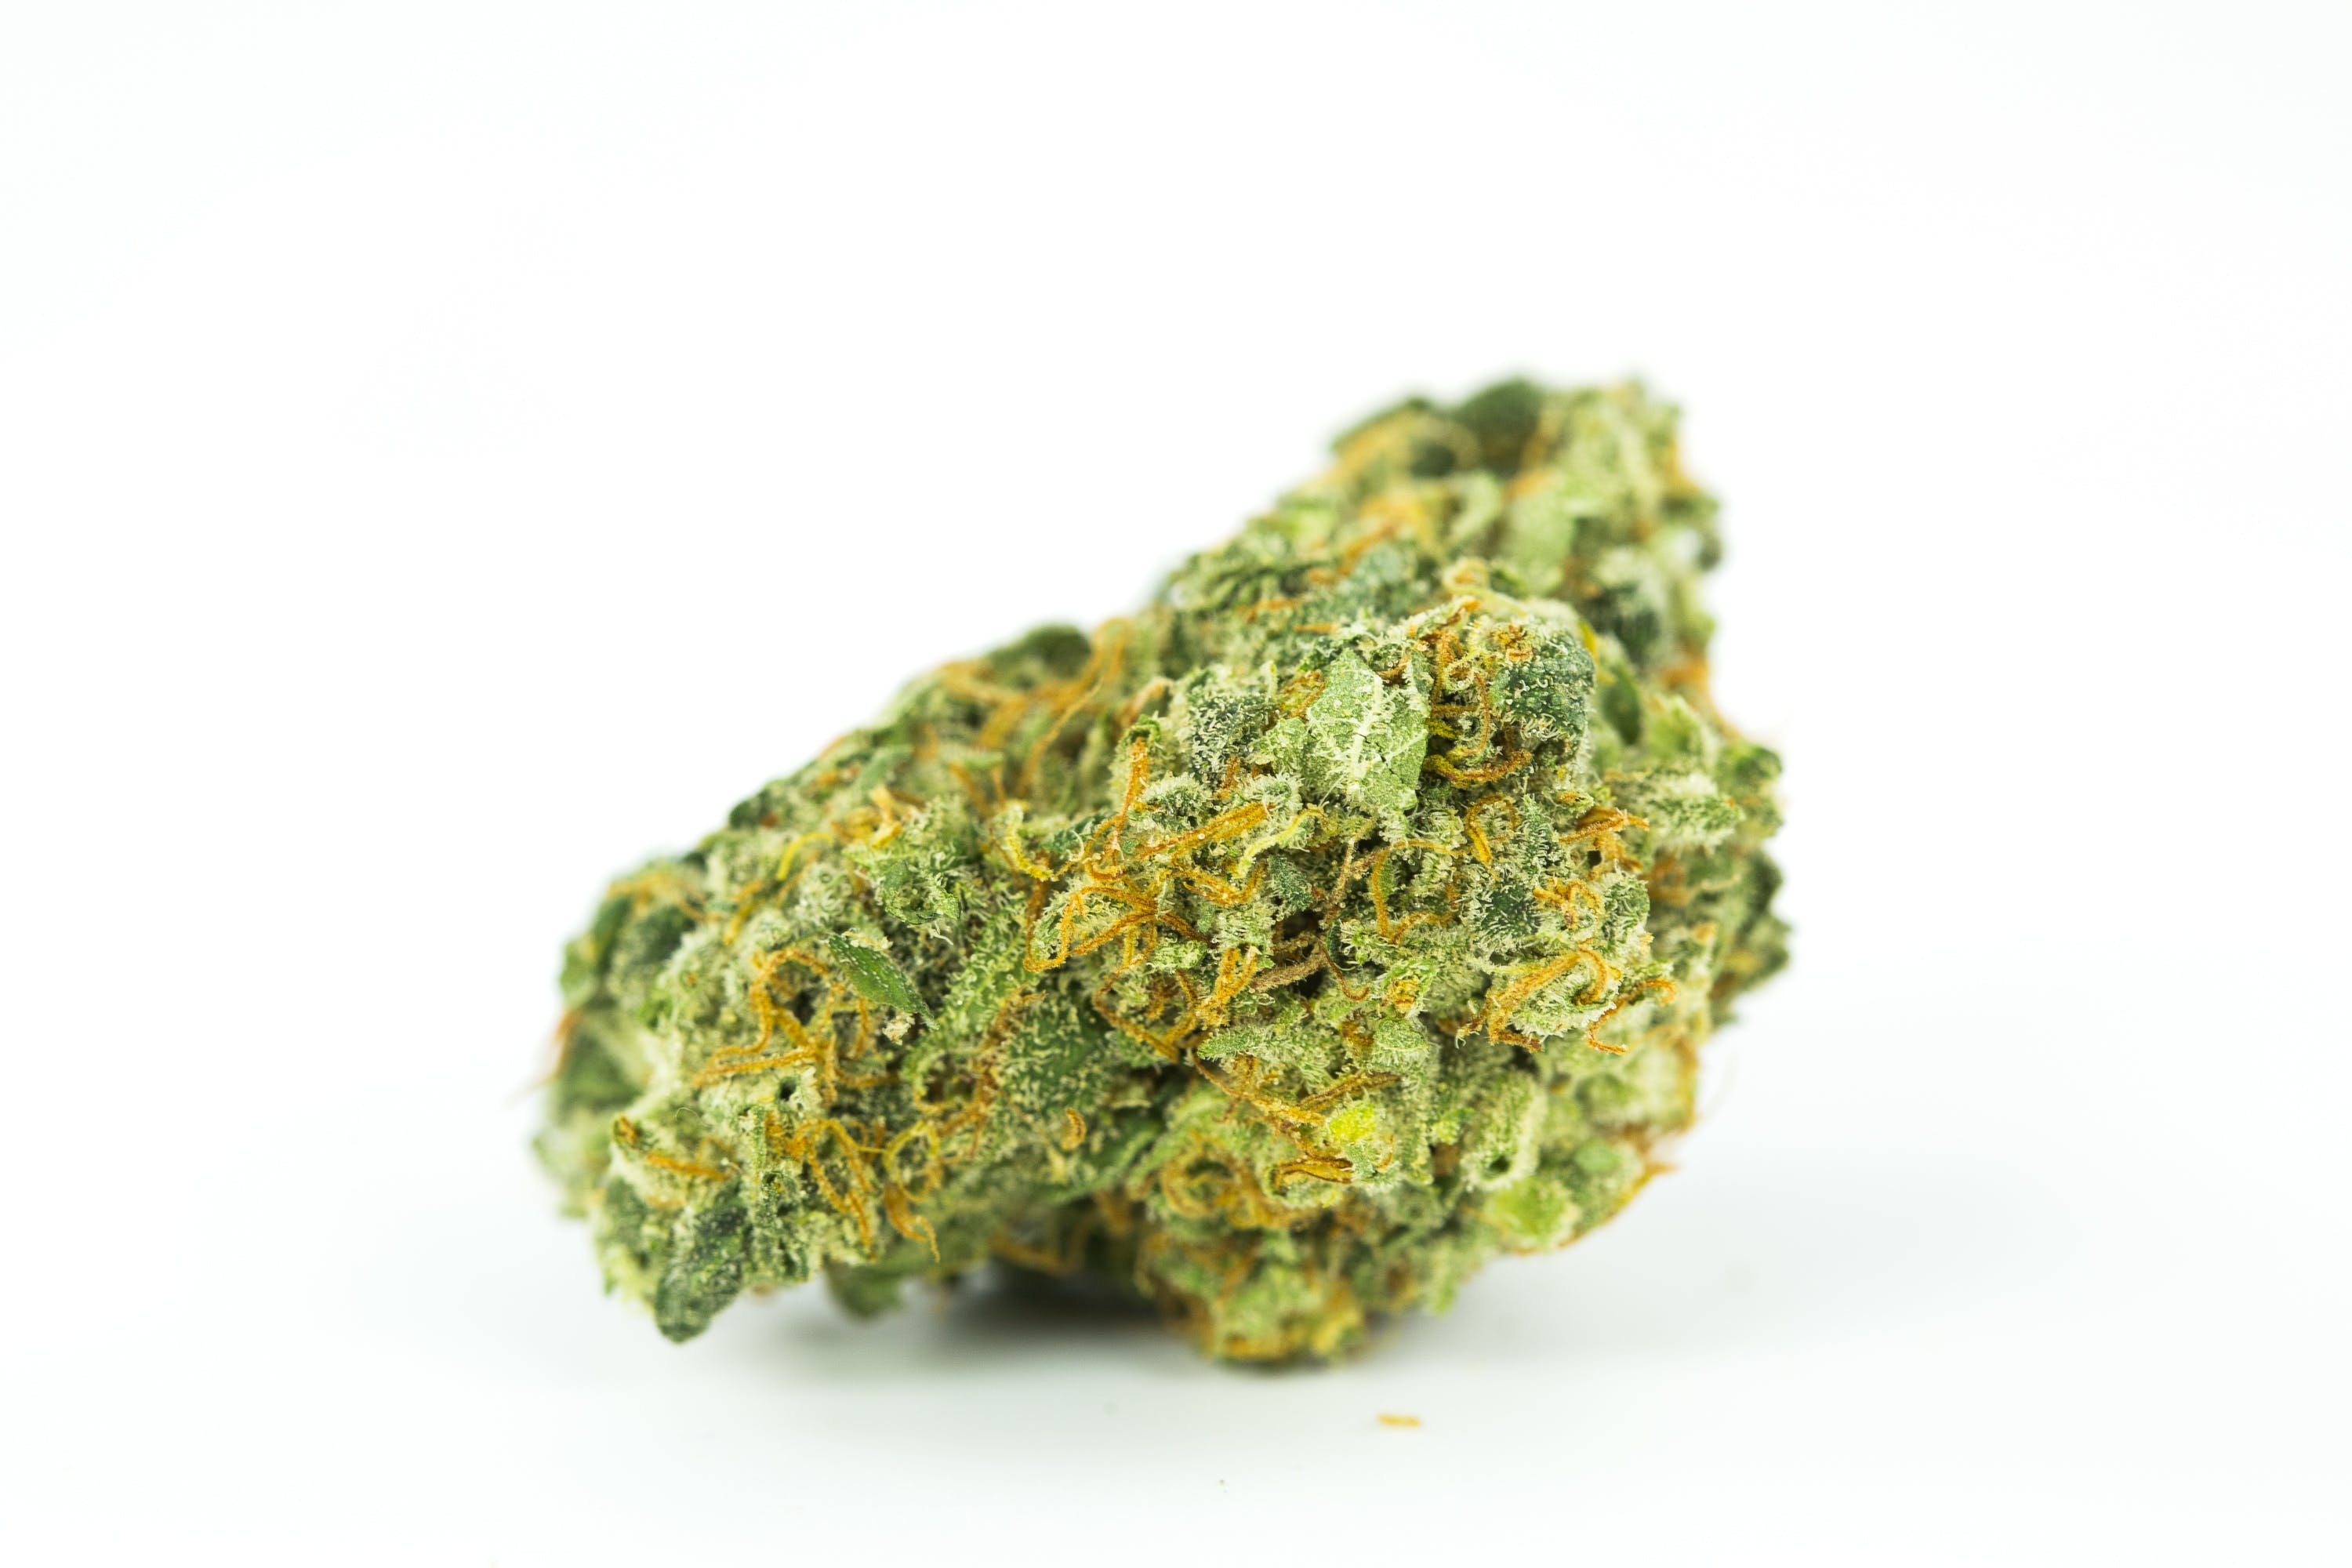 marijuana-dispensaries-zen-remedies-20-cap-in-bakersfield-topshelf-candyland-2oz270-qp530